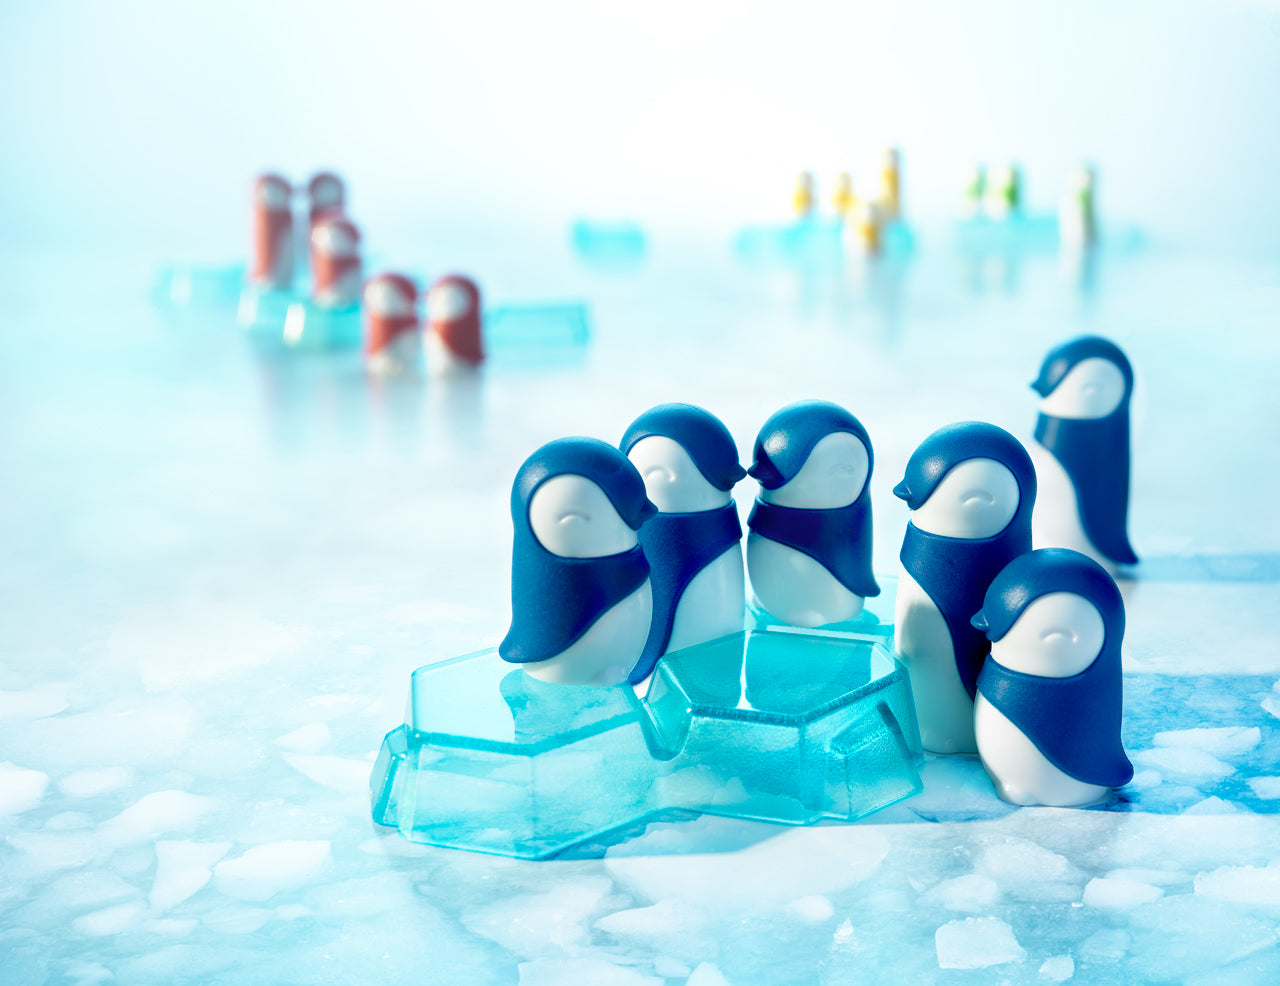 Penguins Huddle Up by Smart Games